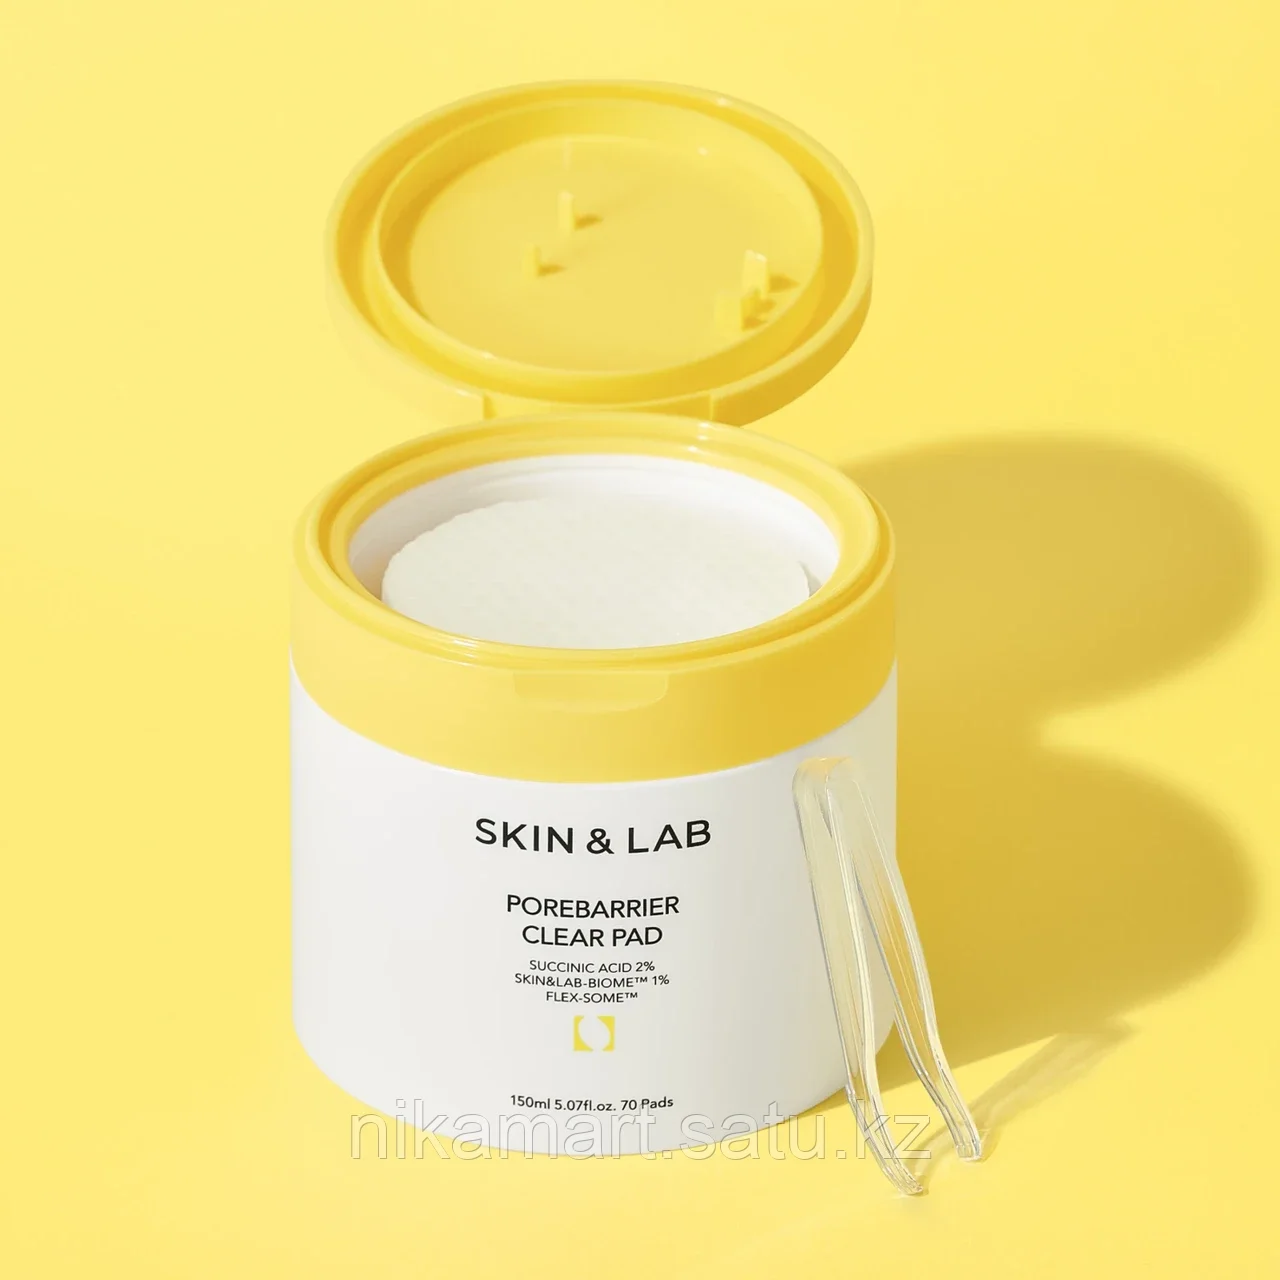 Пилинг-пэды Skin&Lab Porebarrier Clear Pad with 2% Succinic Acid Peeling and Exfoliating Pad | 70 Pads